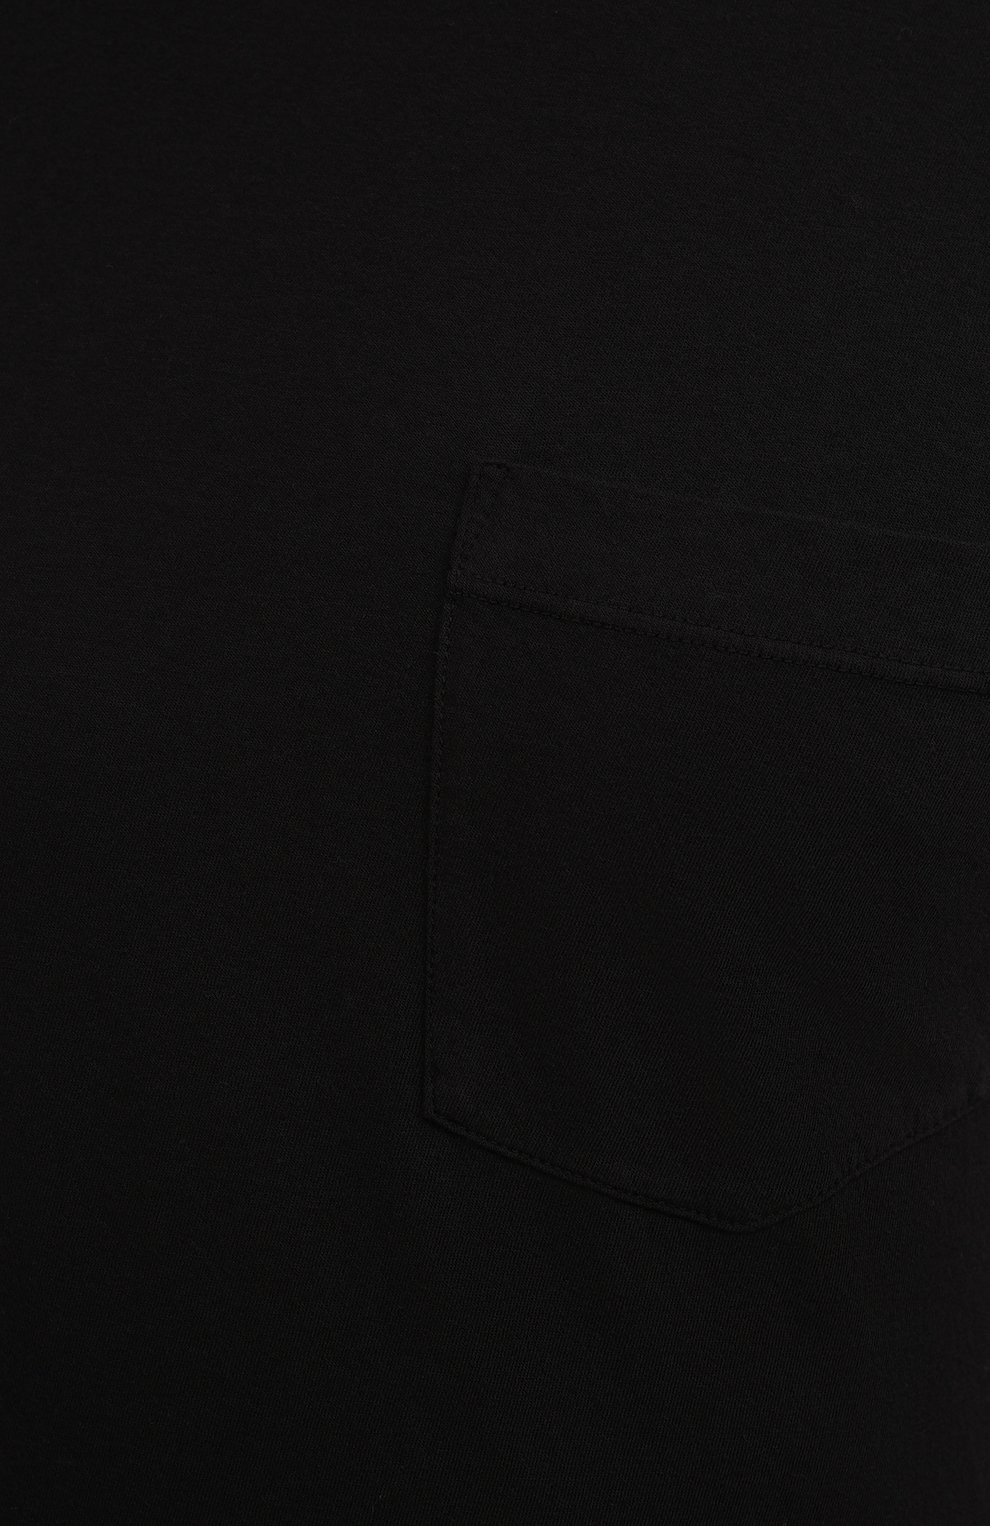 Мужская хлопковая футболка JAMES PERSE черного цвета, арт. MLJ3282 | Фото 5 (Принт: Без принта; Рукава: Короткие; Длина (для топов): Стандартные; Материал внешний: Хлопок; Стили: Кэжуэл)